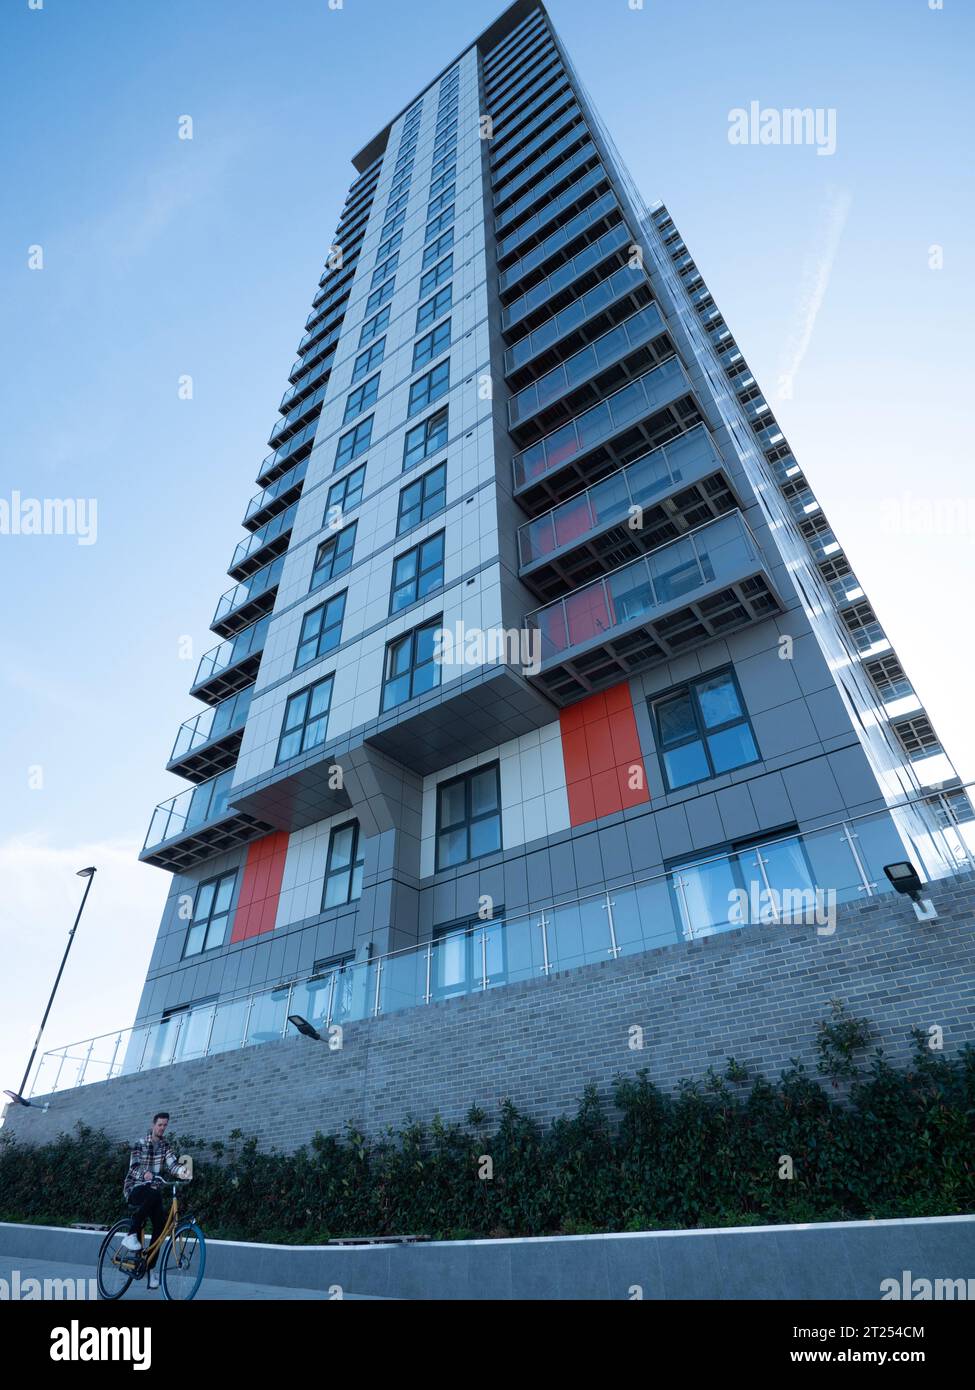 23-stöckige Mast Quay Phase II, Luxuswohnungen, Woolwich Church Street London, gebaut von Comer Homes, Mast Quay Tower Blöcke sind ein Bauprojekt bis zur Miete und stehen unter der Gefahr des Abbruchs durch Royal Borough of Greenwich Stockfoto